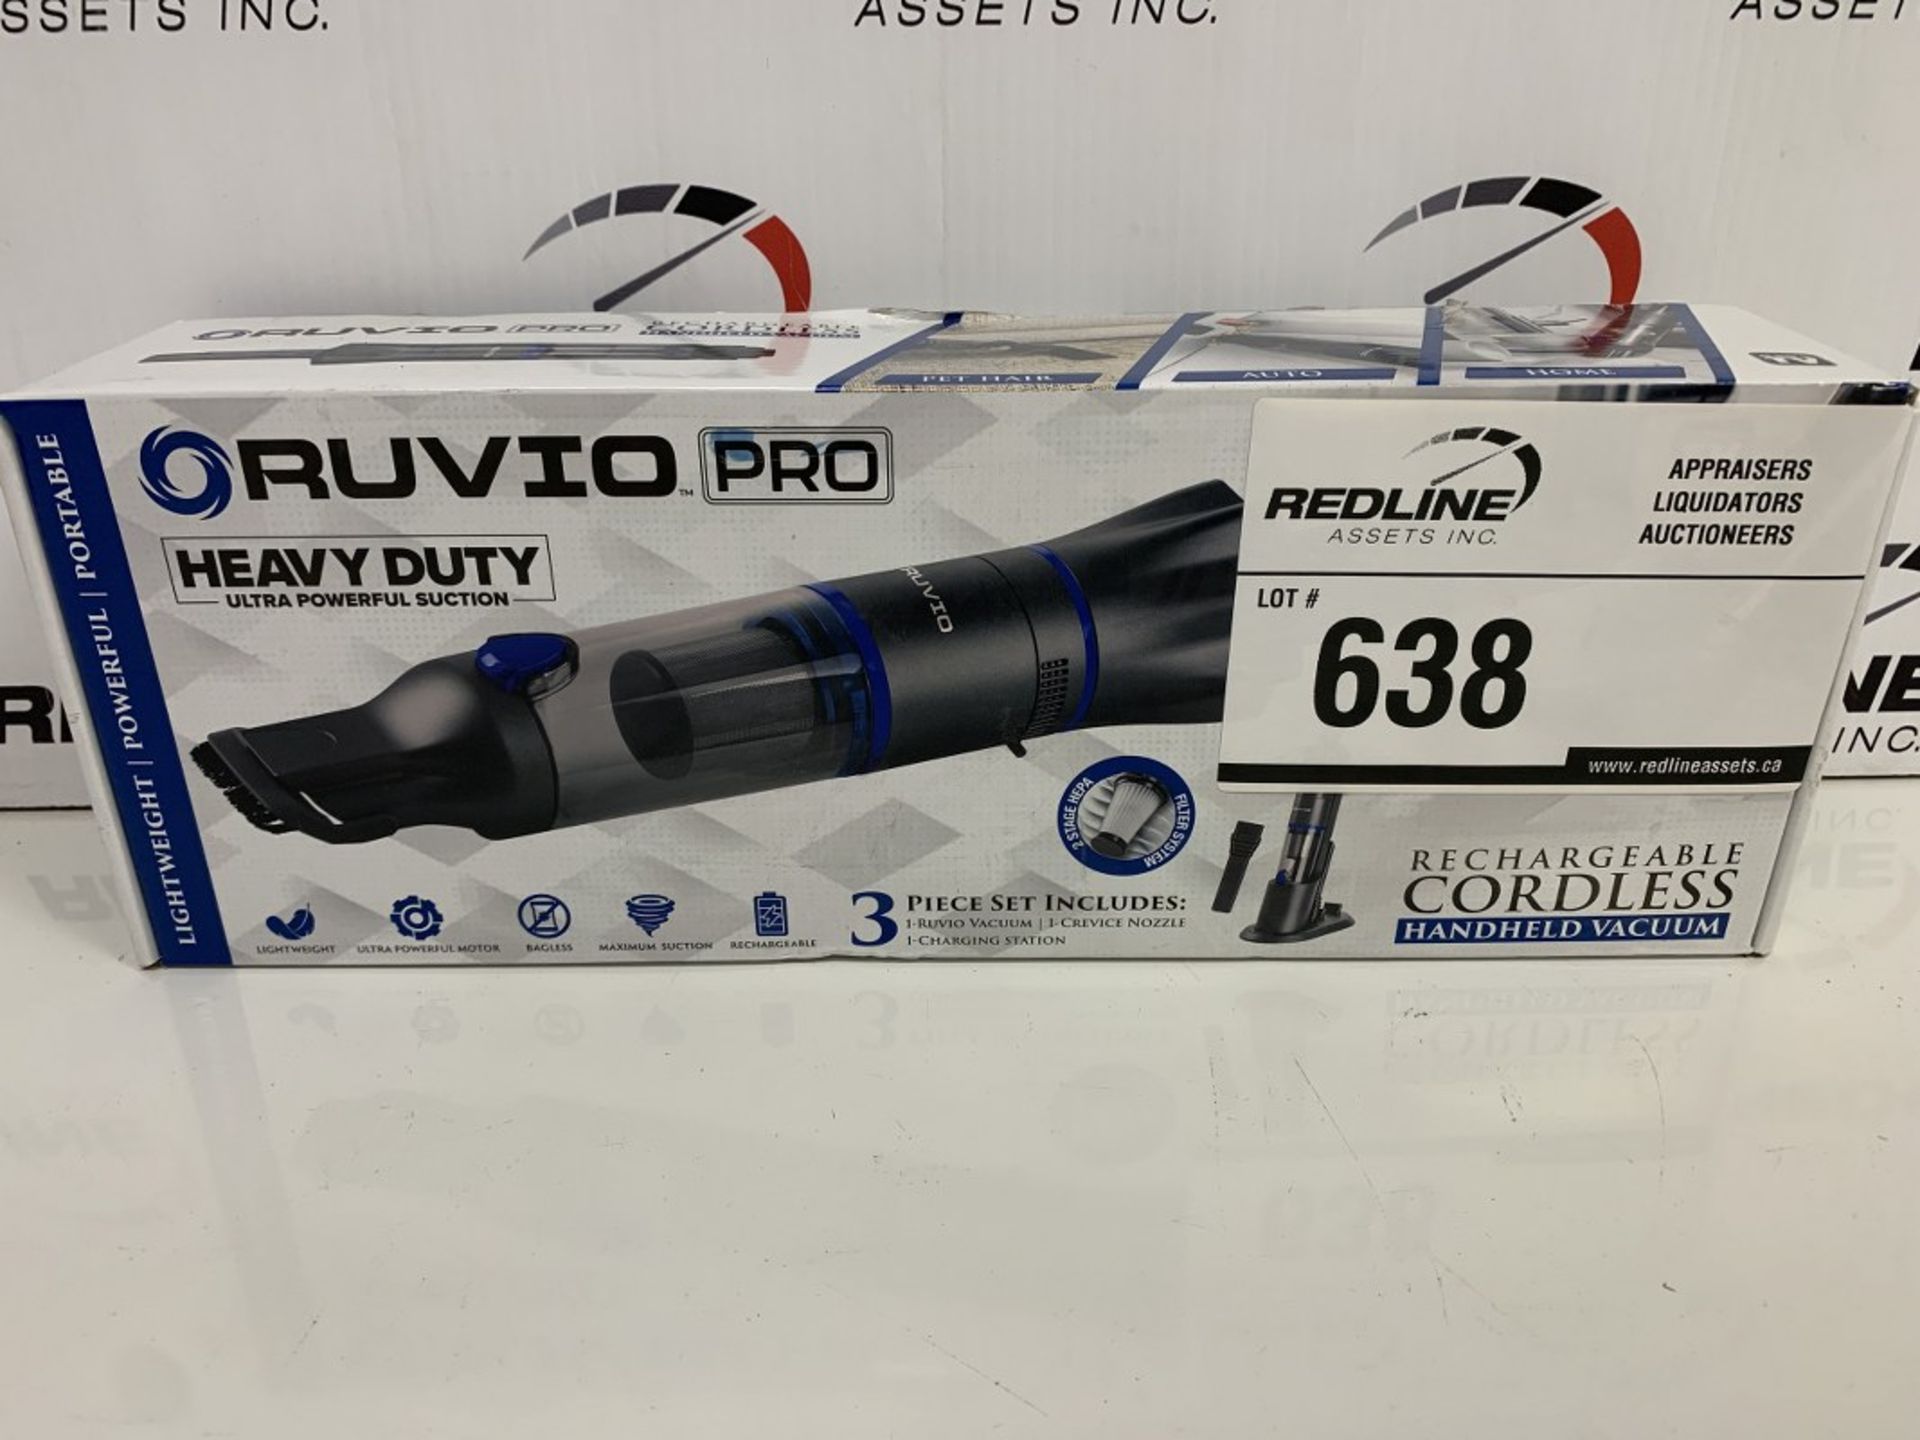 Ruvio Pro - Handheld Vacuum